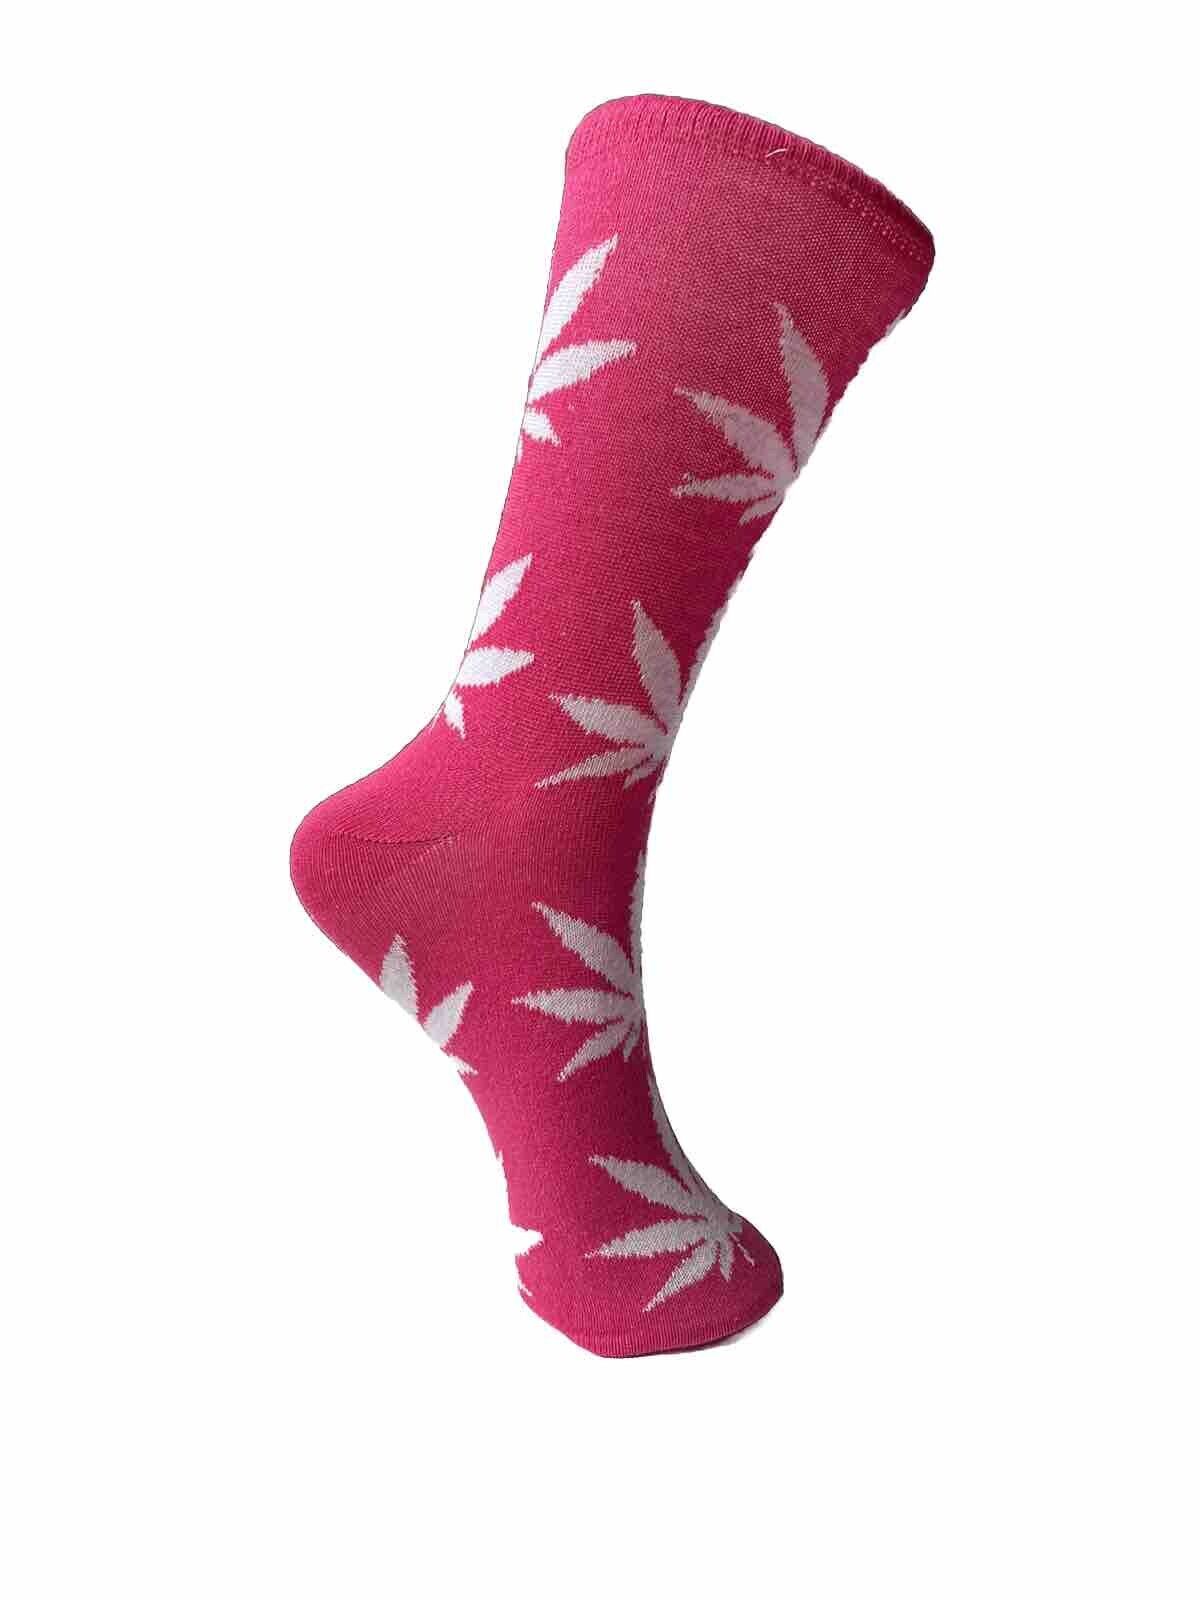 fun novelty socks weed pink leaves side 2